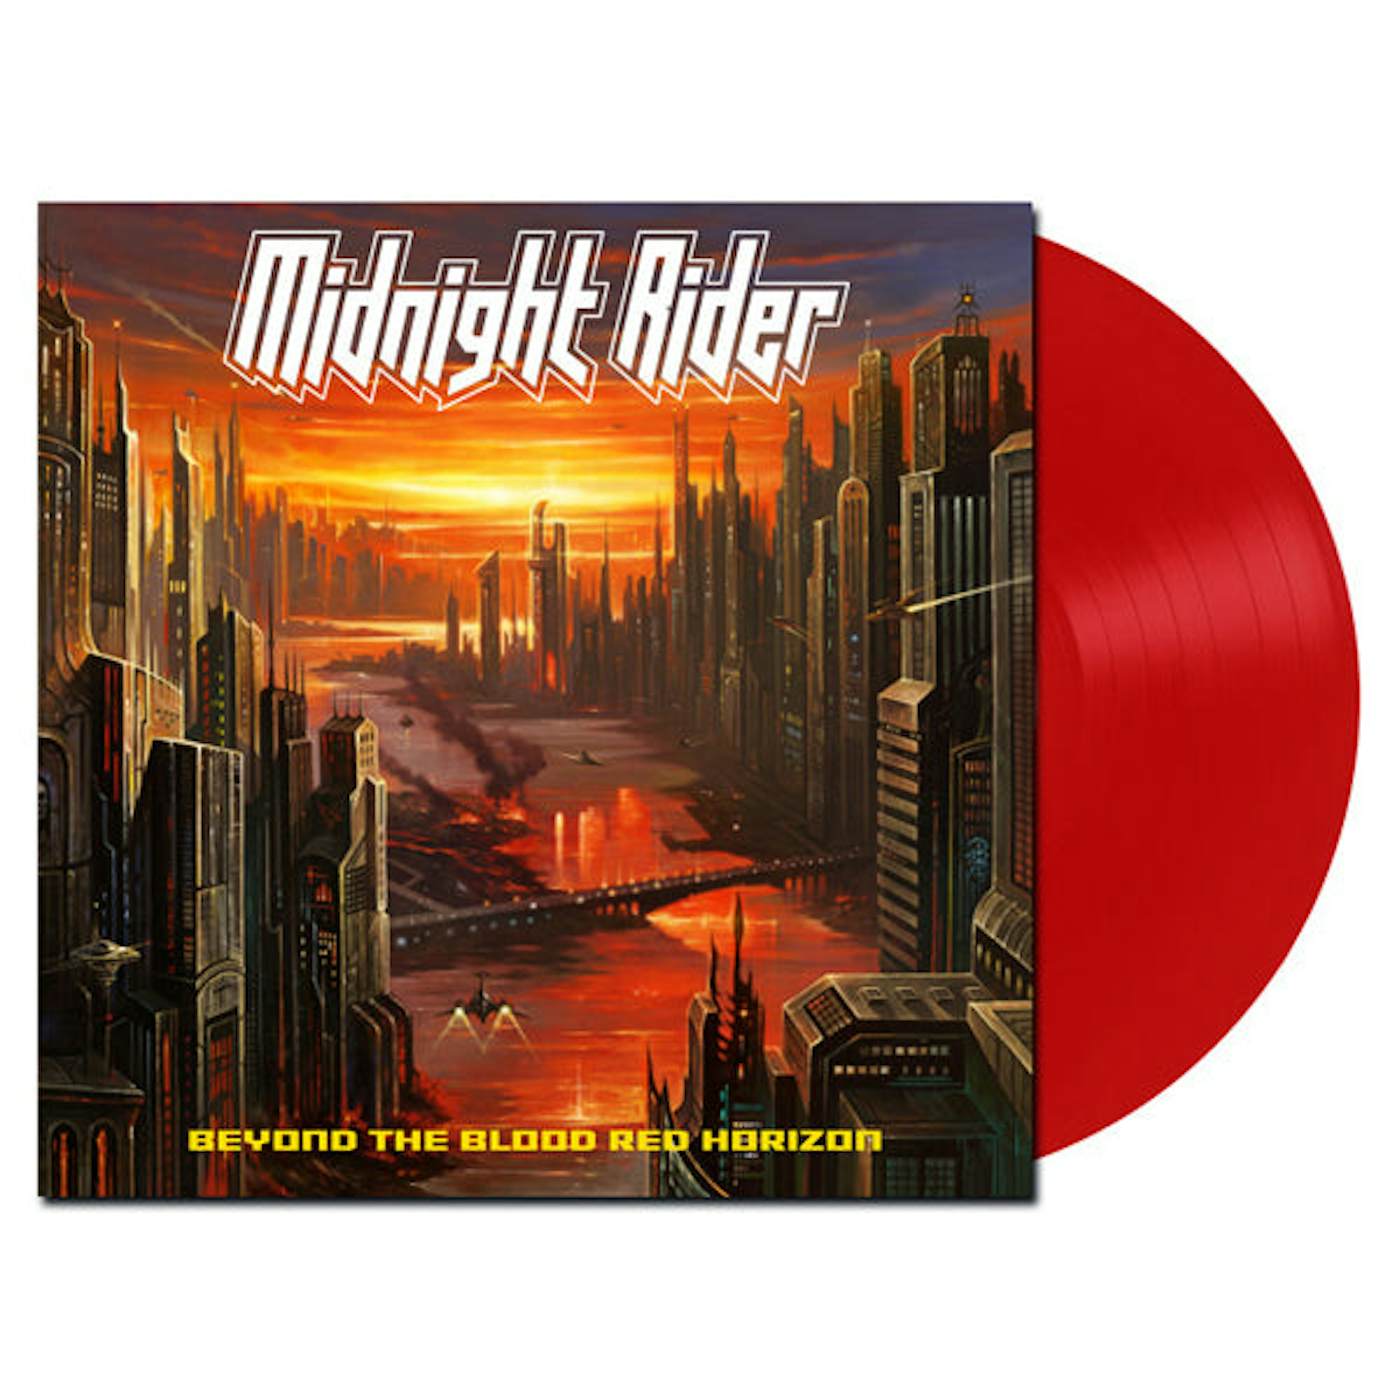 Midnight Rider LP - Beyond The Blood Red Horizon (Red Vinyl)